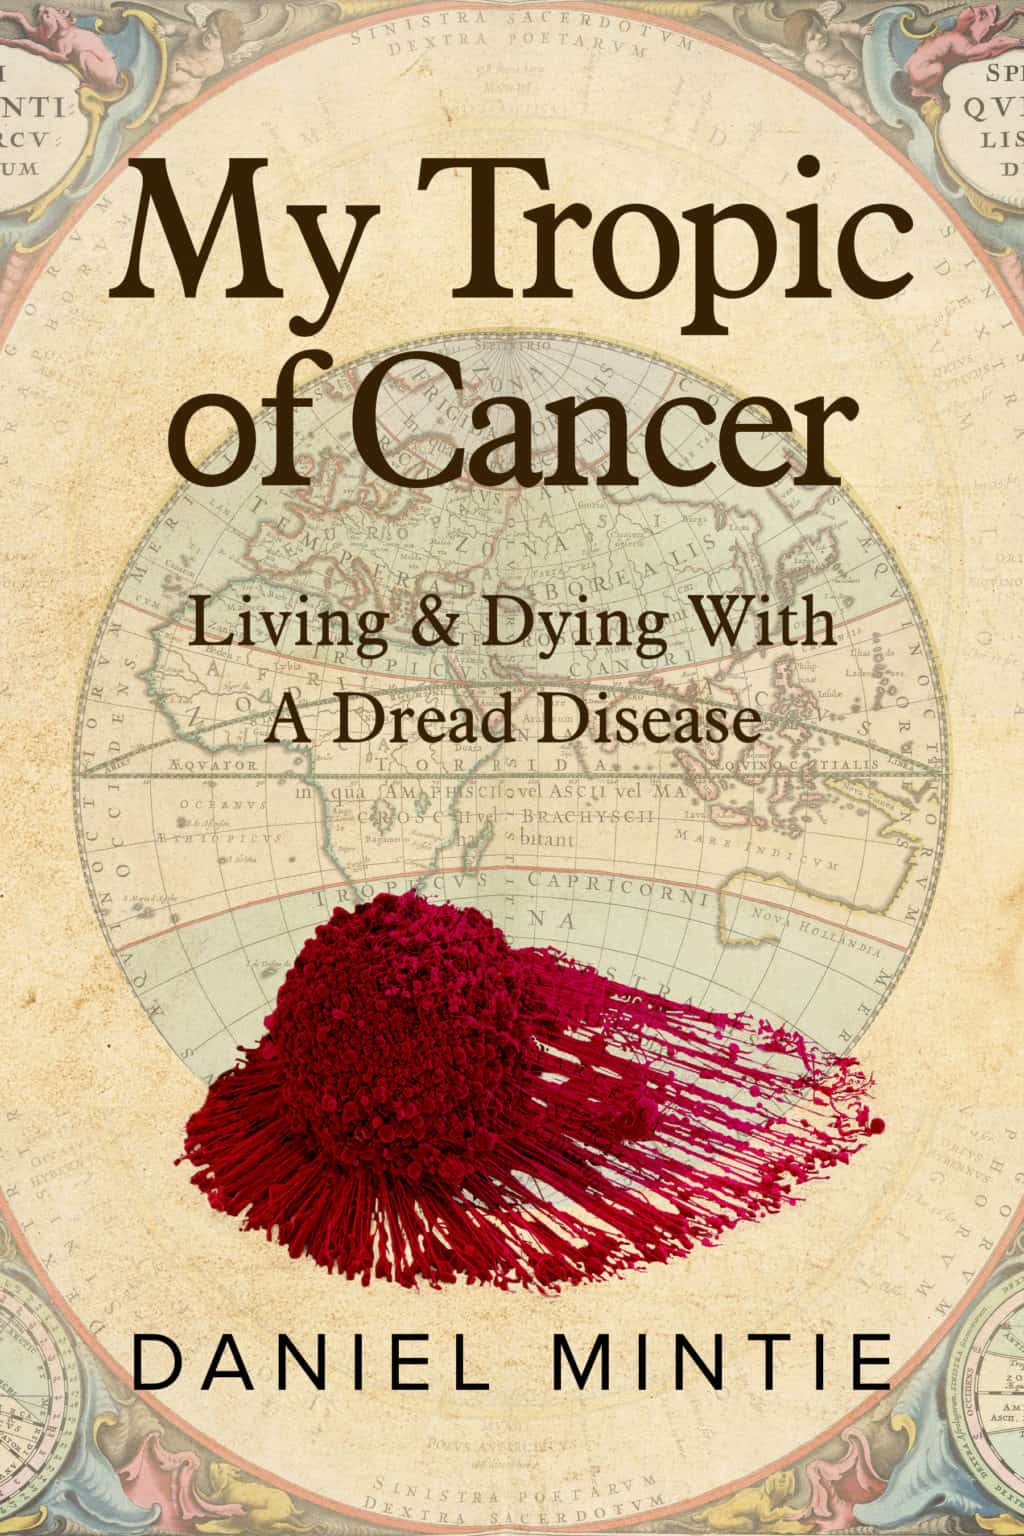 tropic of cancer novel